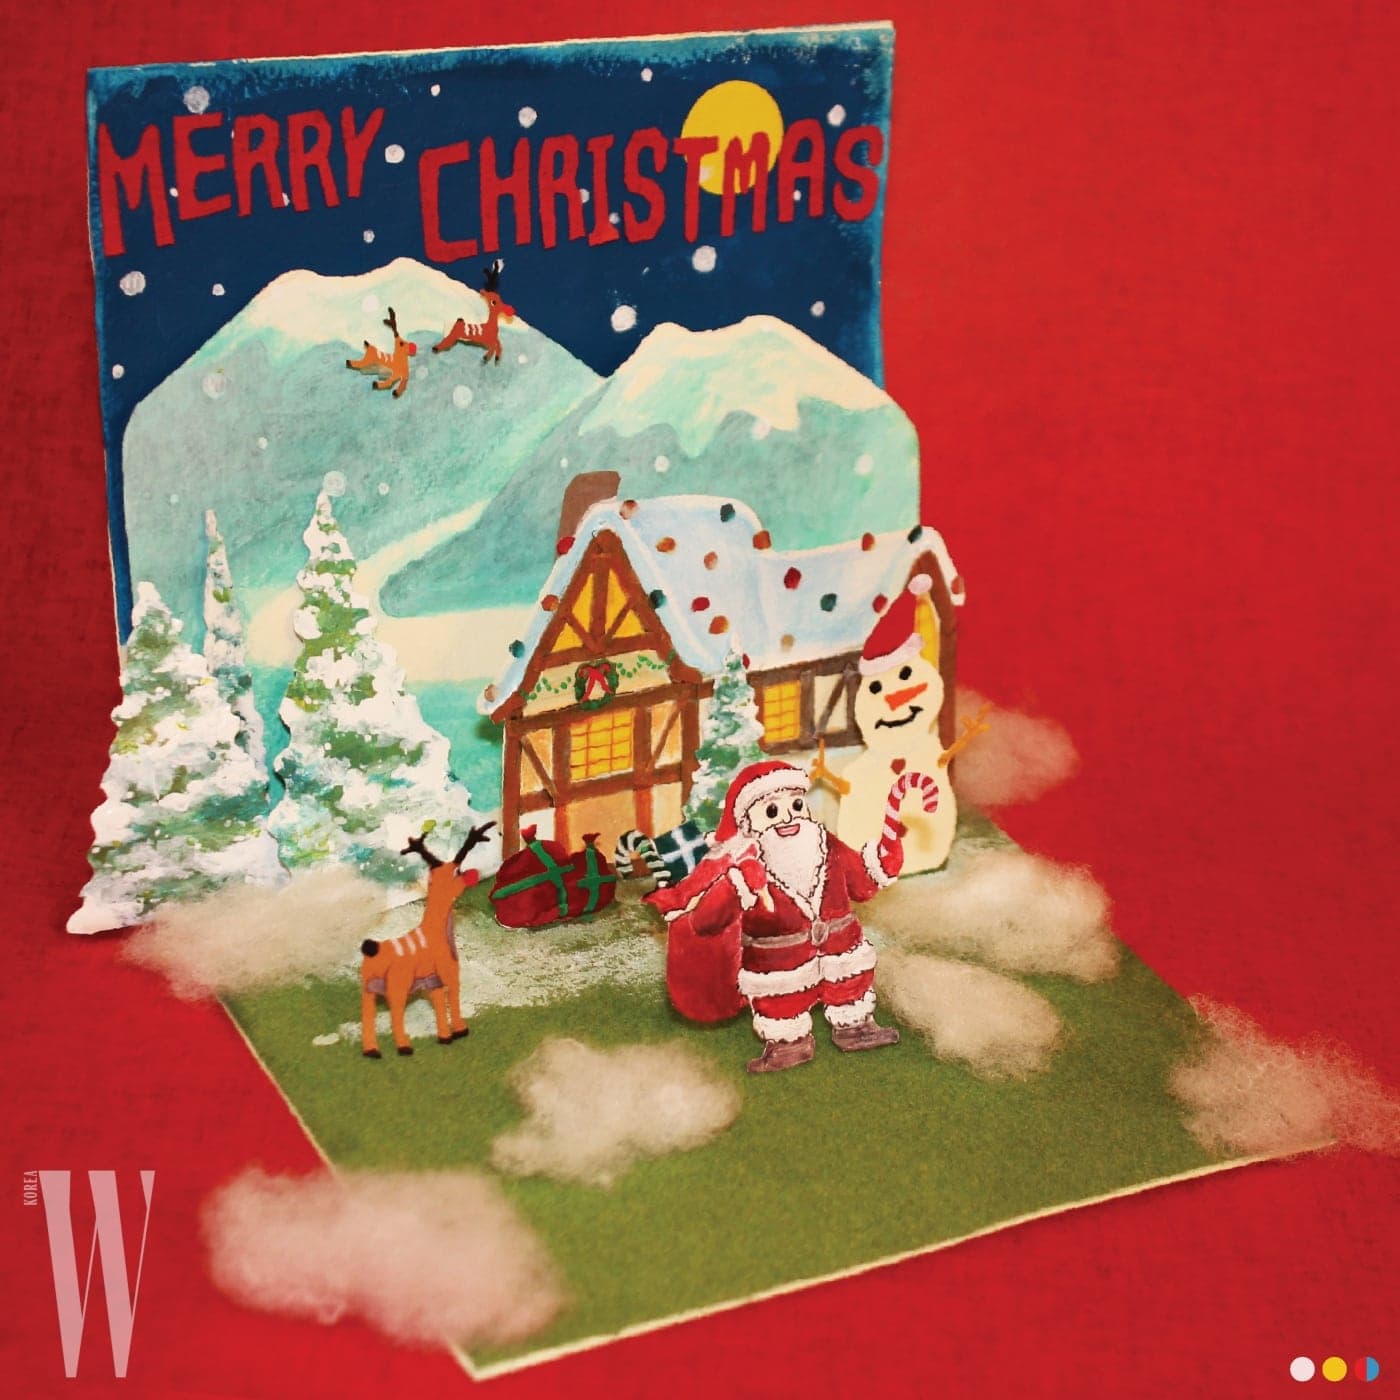 어릴 적 주고받던 크리스마스 카드에서 영감 받아 만든 아이앱 스튜디오.